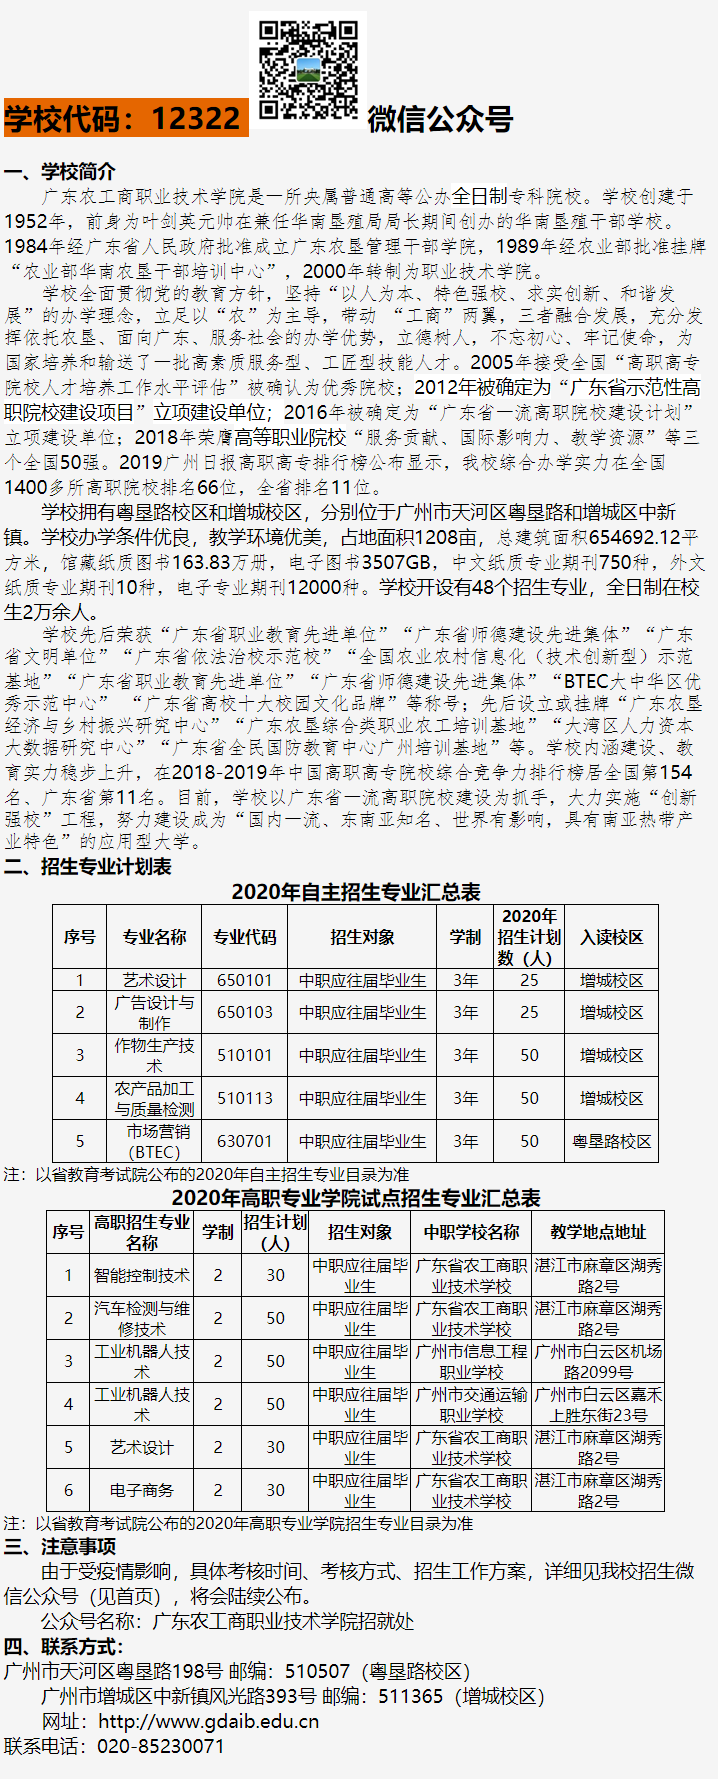 广东农工商职业技术学院2020年自主招生（含高职专业学院） 招生简章